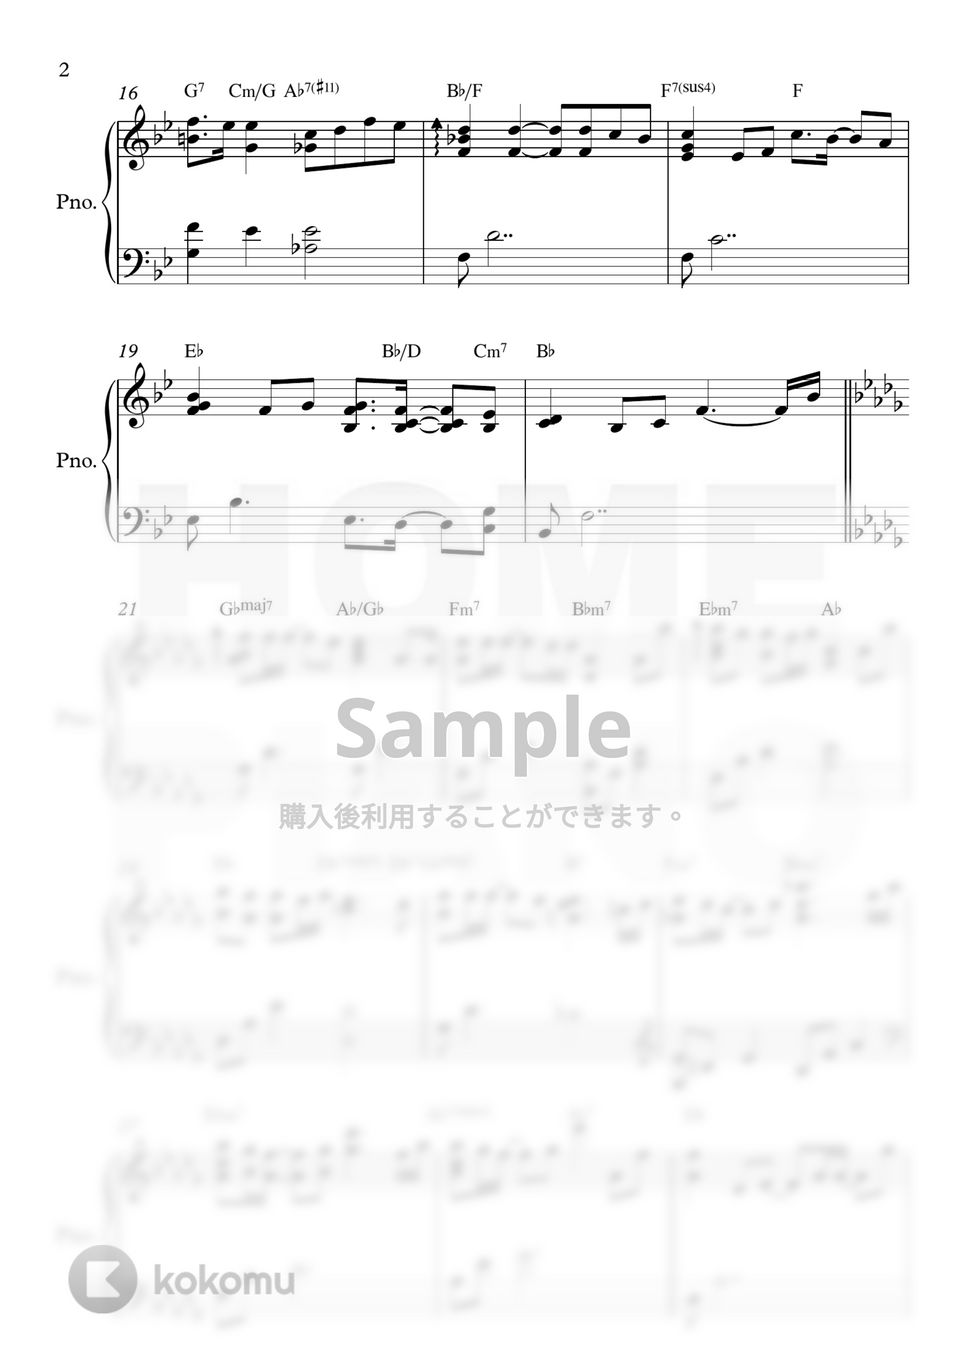 キム・ドンリュル - 感謝 (上級) by HOME PIANO